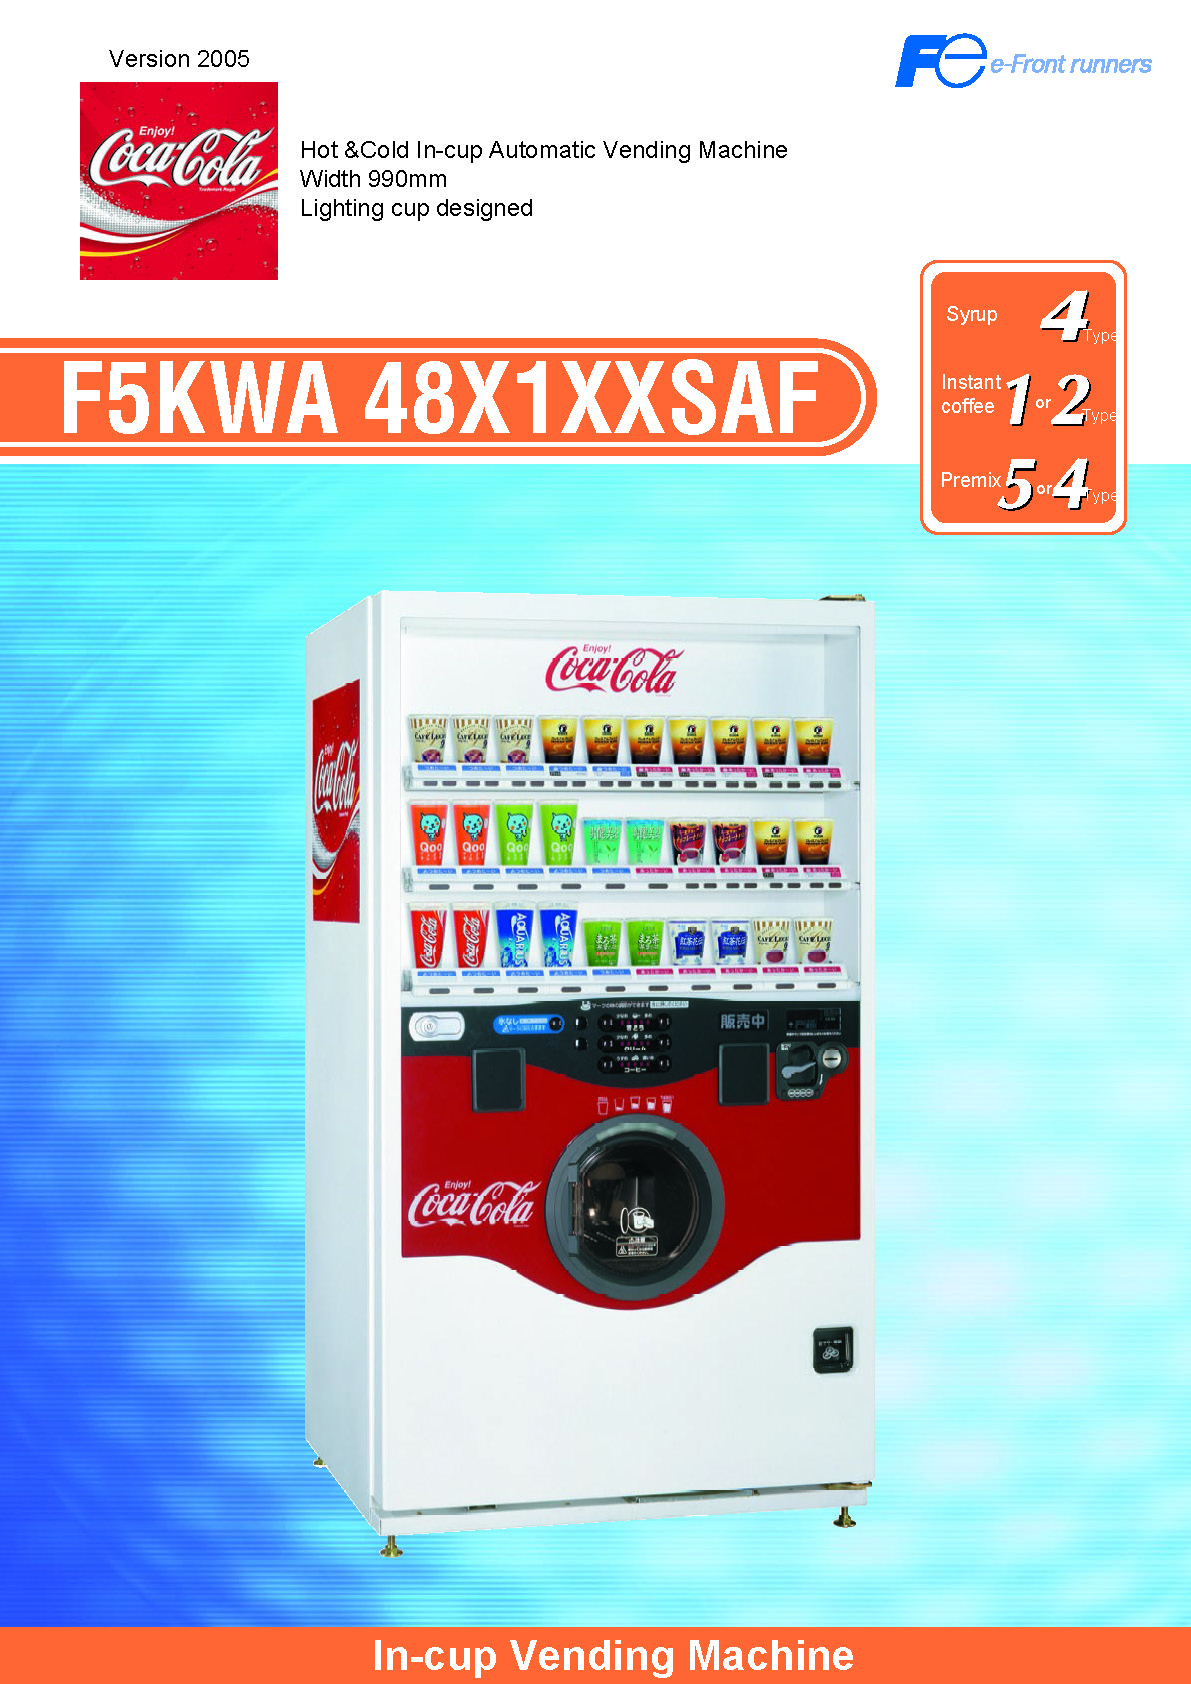 ENG-F5KWA 48X1XXSAF